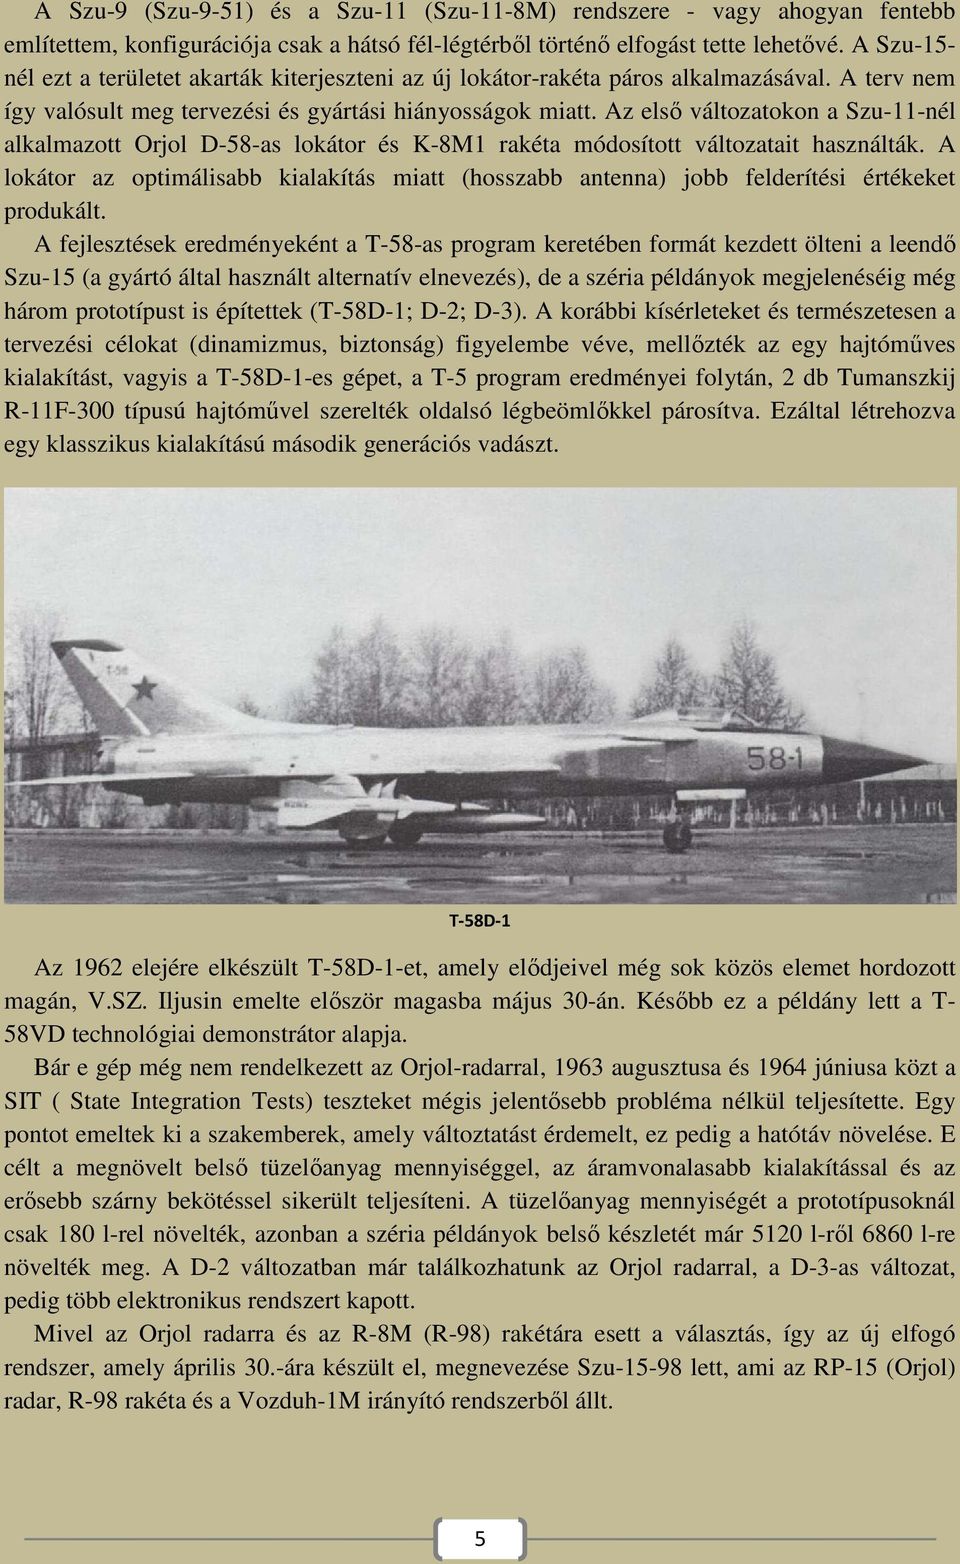 Az első változatokon a Szu-11-nél alkalmazott Orjol D-58-as lokátor és K-8M1 rakéta módosított változatait használták.